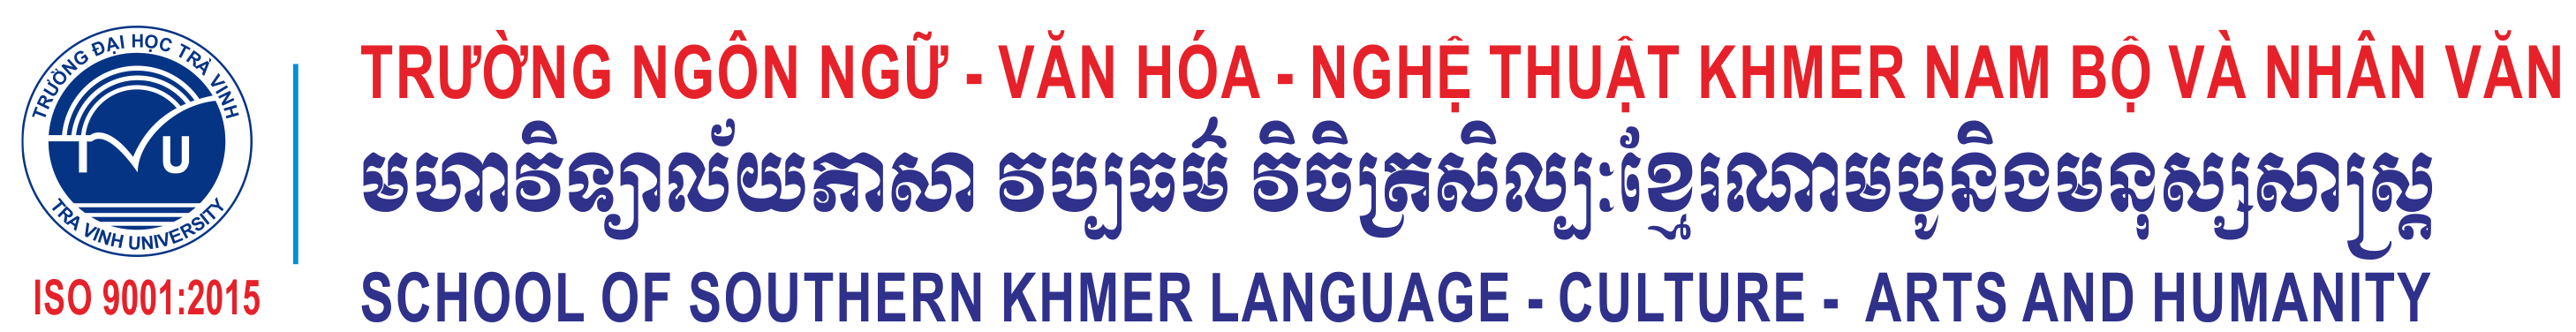 Trường Ngôn ngữ - Văn hóa - Nghệ thuật Khmer Nam Bộ và Nhân văn (TVU)